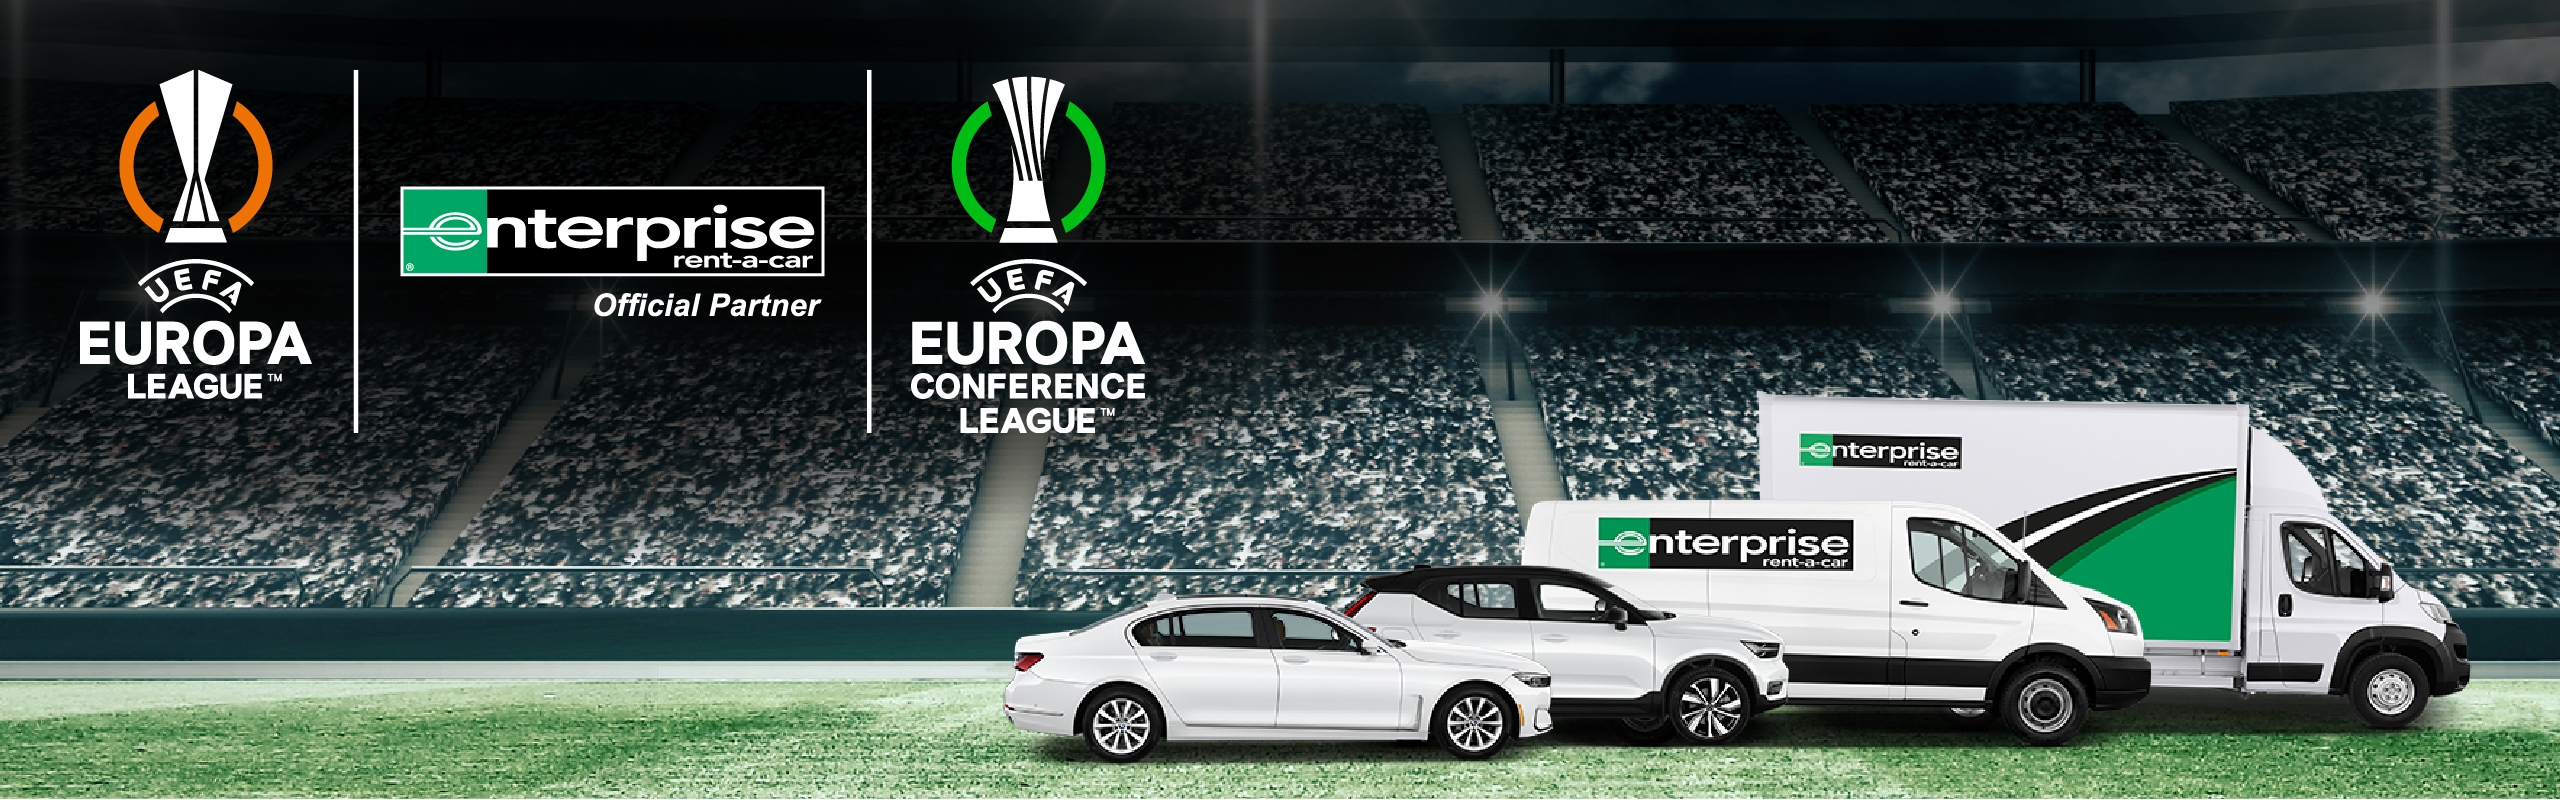 UEFA Eiropas līgas un UEFA Eiropas konferences līgas sponsorēšana